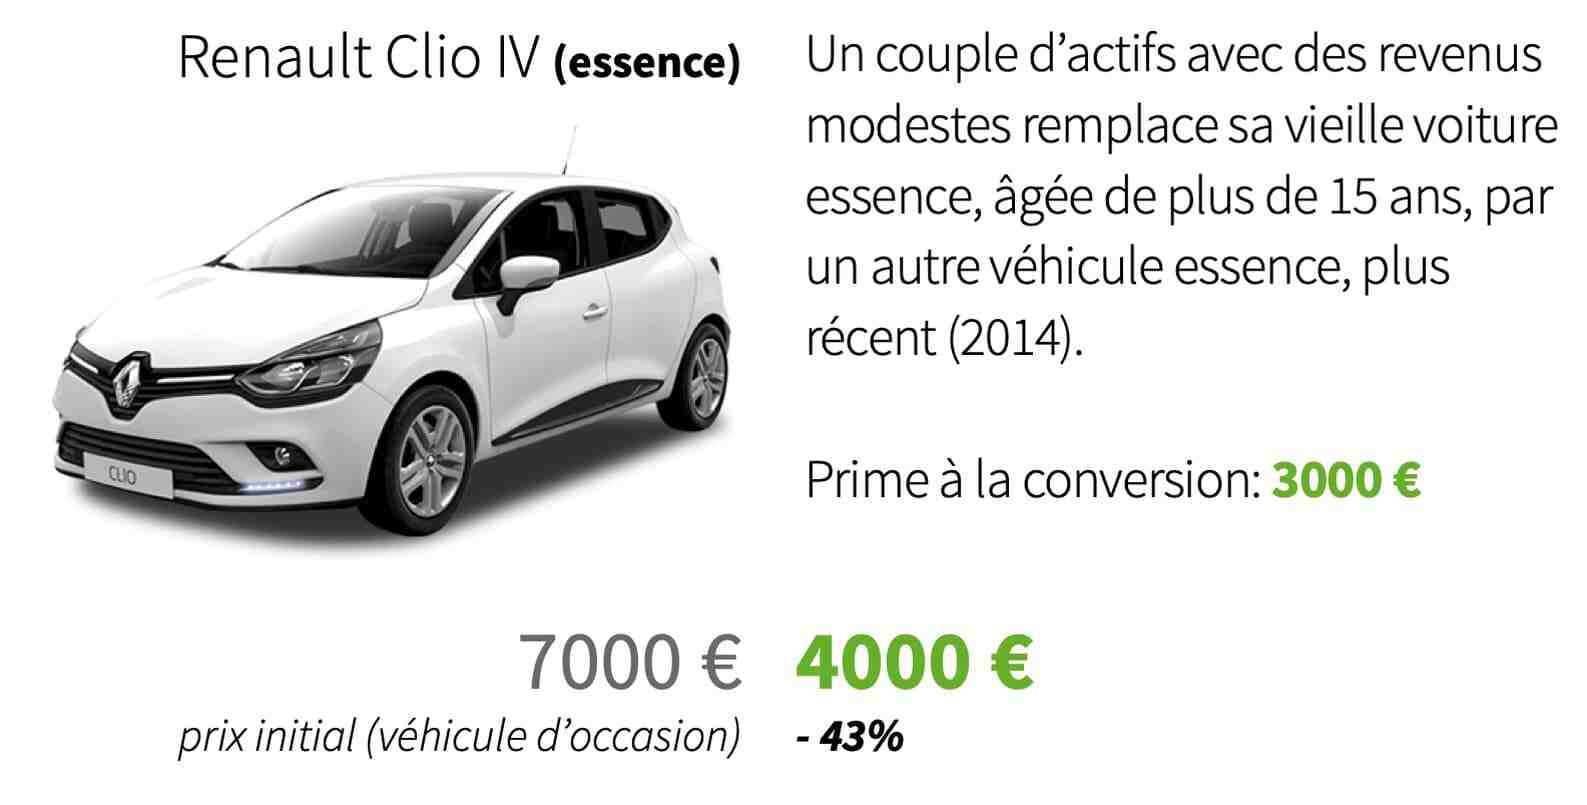 Qui a acheté une voiture pour 15 000 euros?